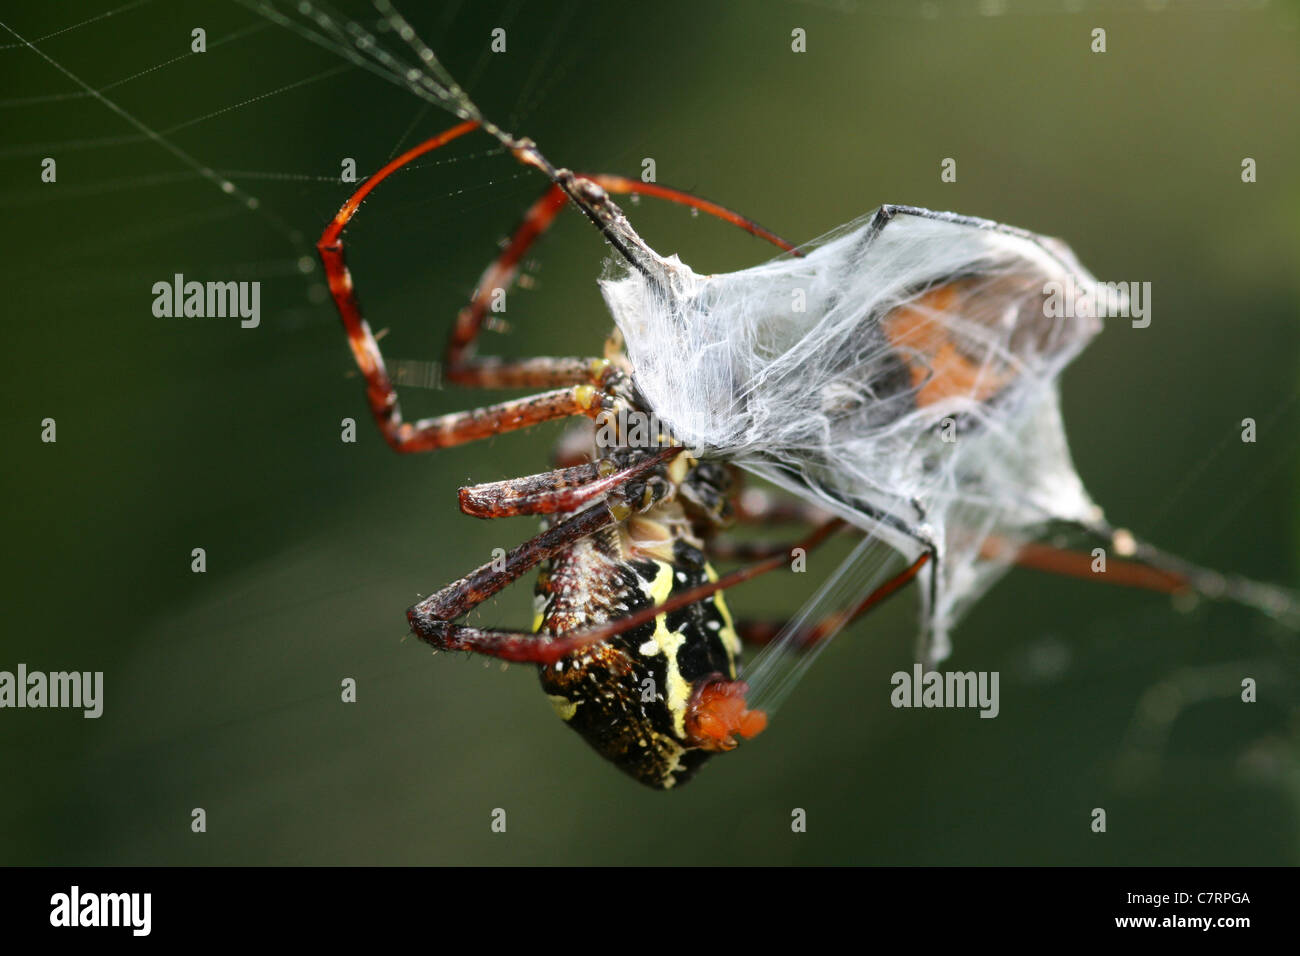 Signatur-Spider Argiope SP. kapselt Beute In seinem seidenen Steg Stockfoto